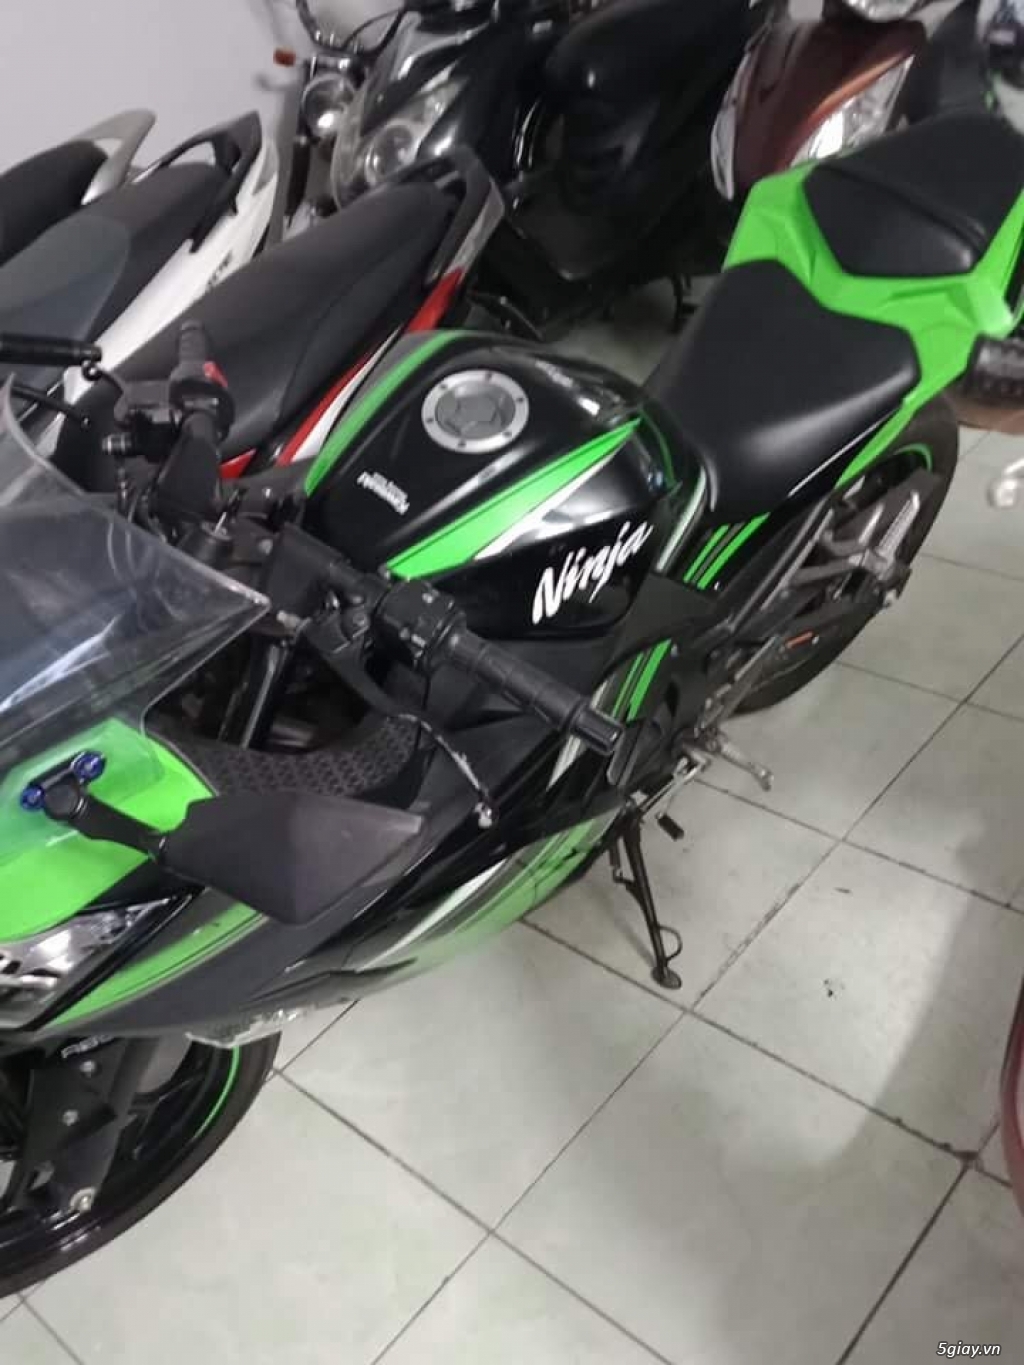 Moto Kawasaki Ninja 300 biển số thành phố giá 87t900 | 5giay